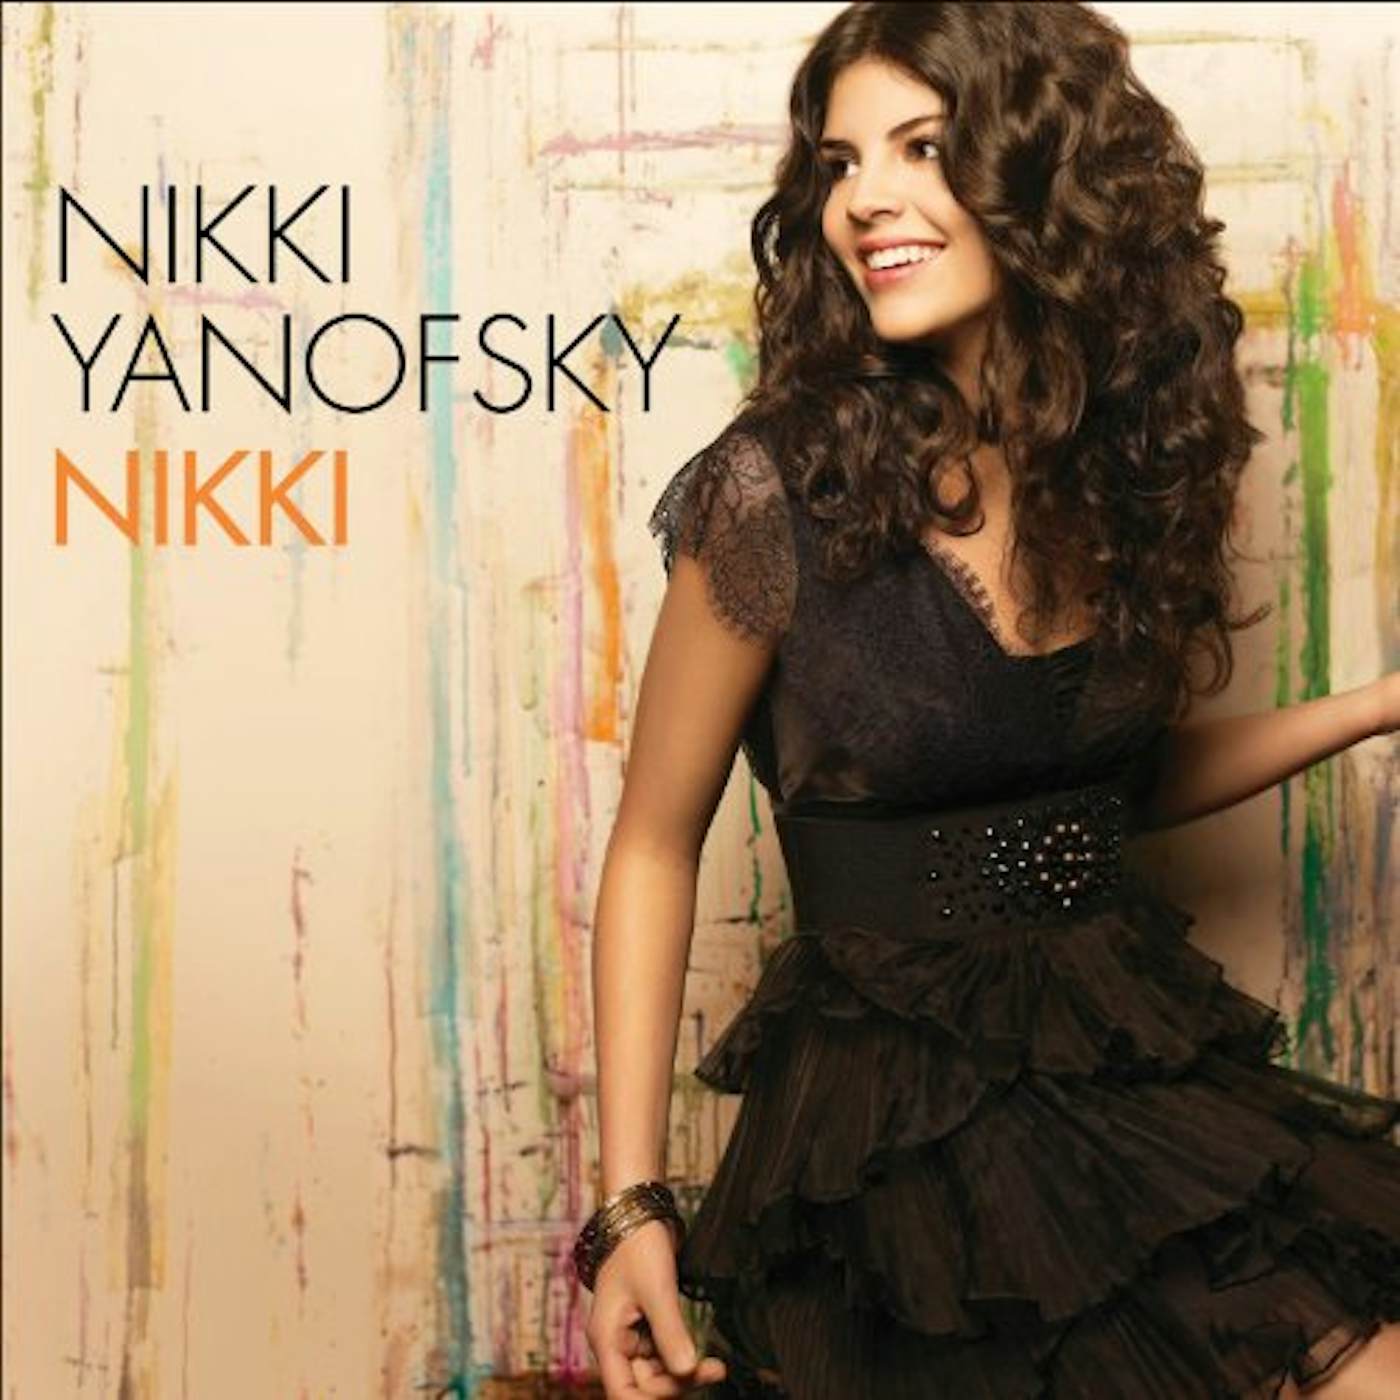 Nikki Yanofsky NIKKI CD